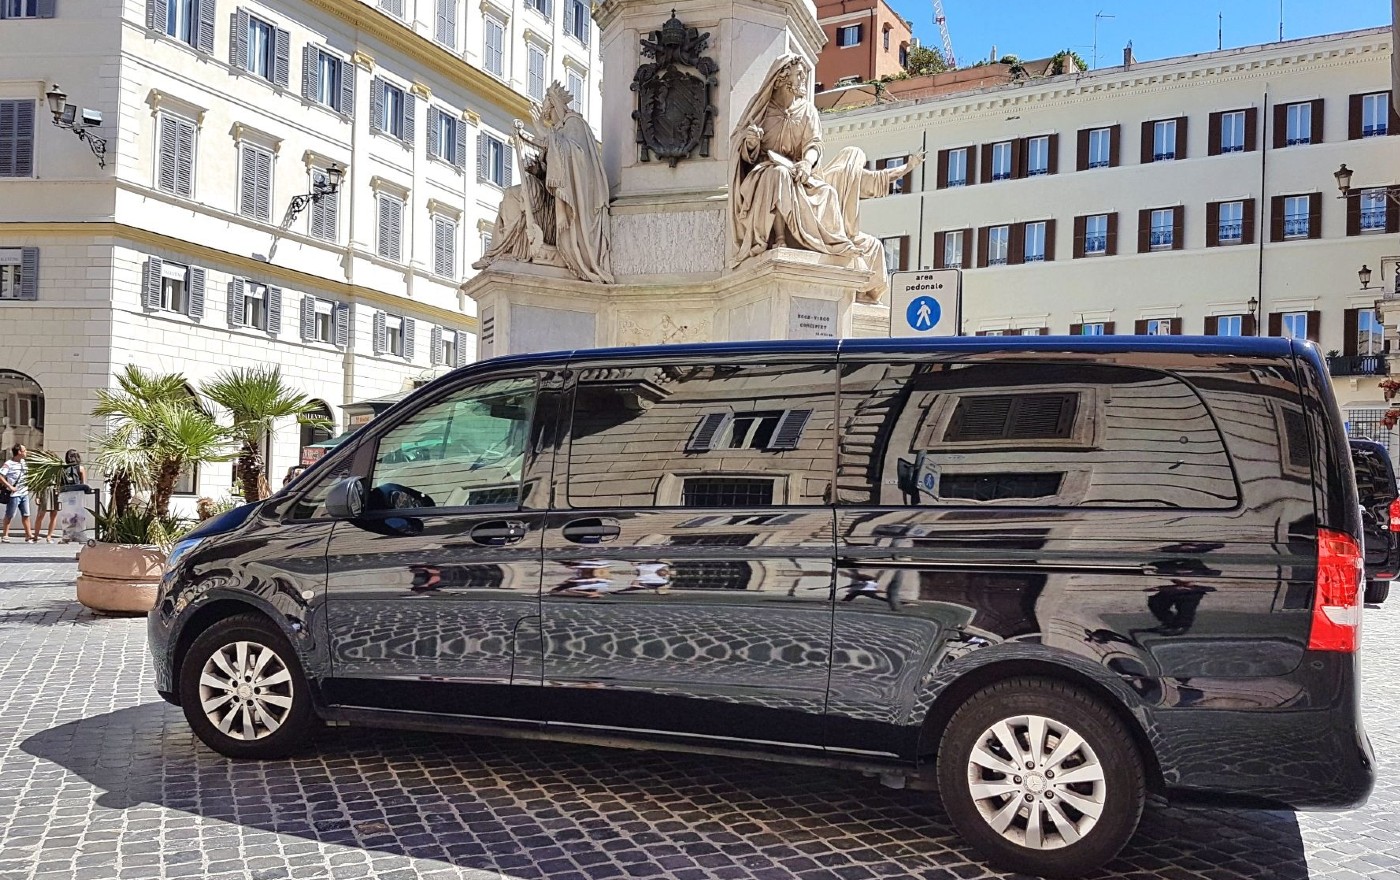 Rome Van Service